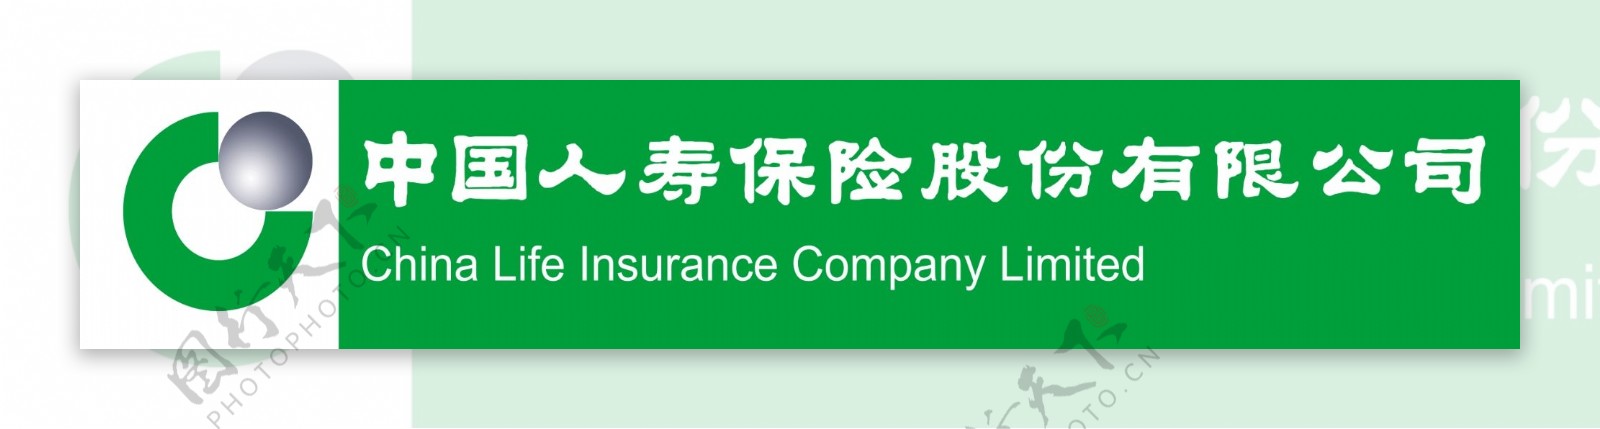 中国人寿保险股份有限公司广告牌图片